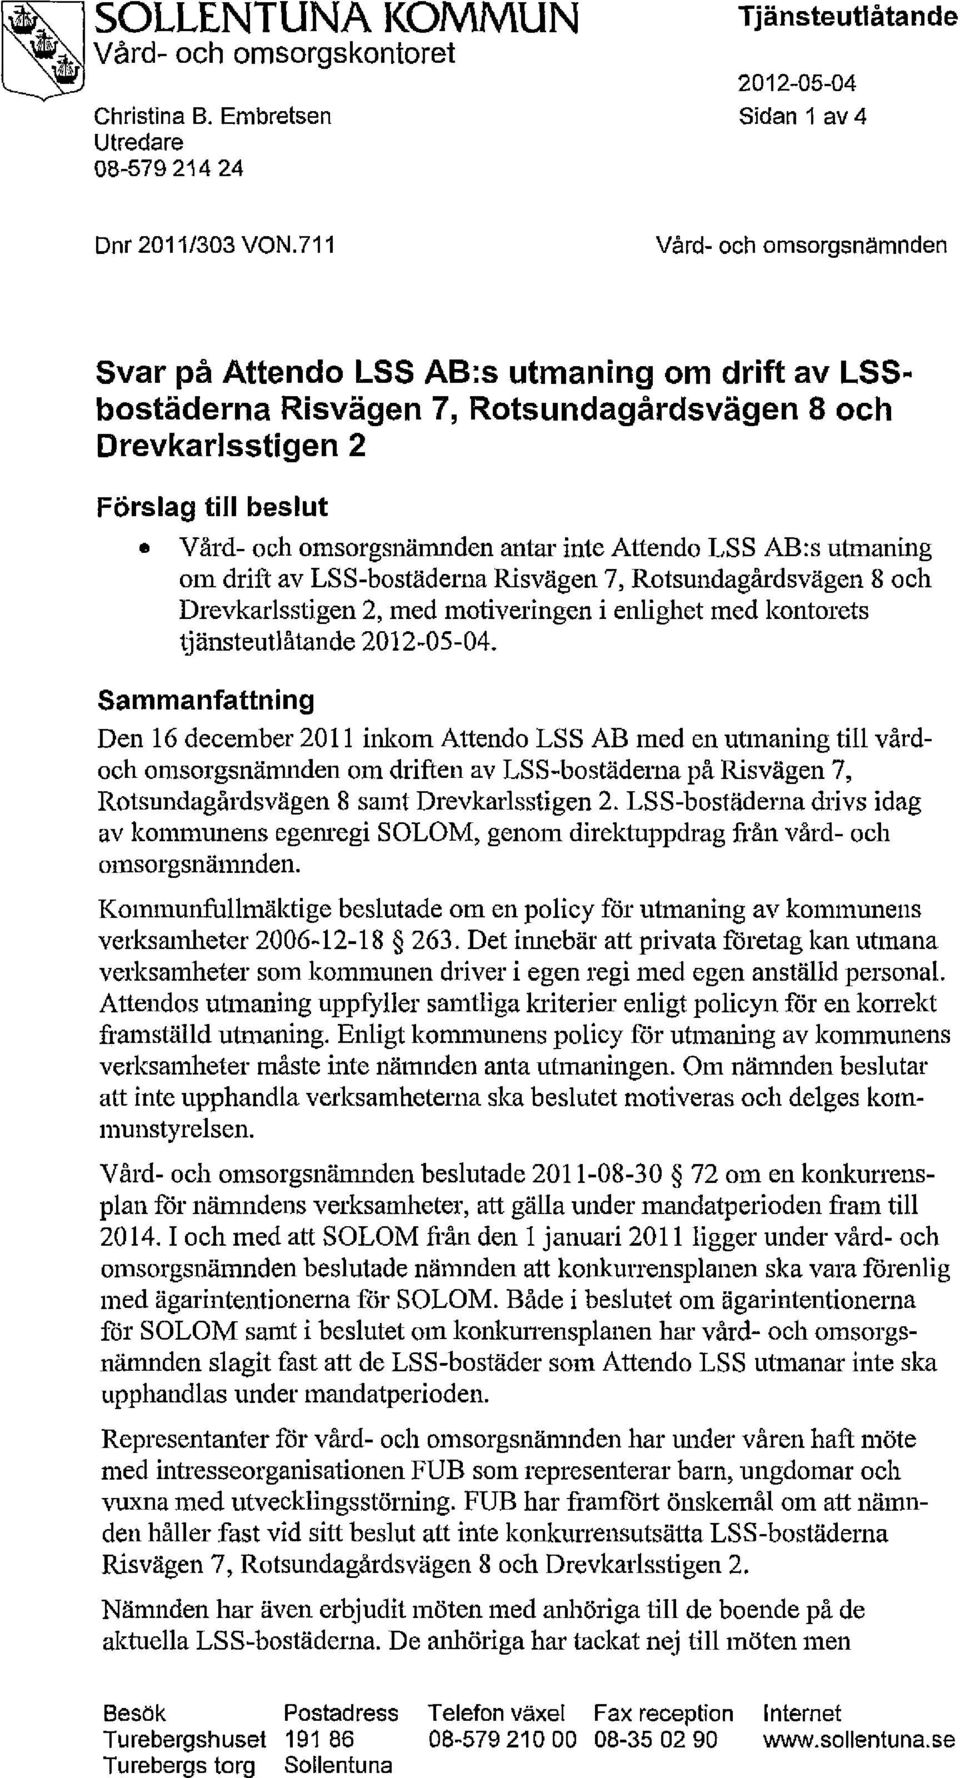 Attendo LSS AB:s utmaning om drift av LSS-bostäderna Risvägen 7, Rotsundagårdsvägen 8 och Drevkarlsstigen 2, med motiveringen i enlighet med kontorets tjänsteutlåtande 2012-05-04.